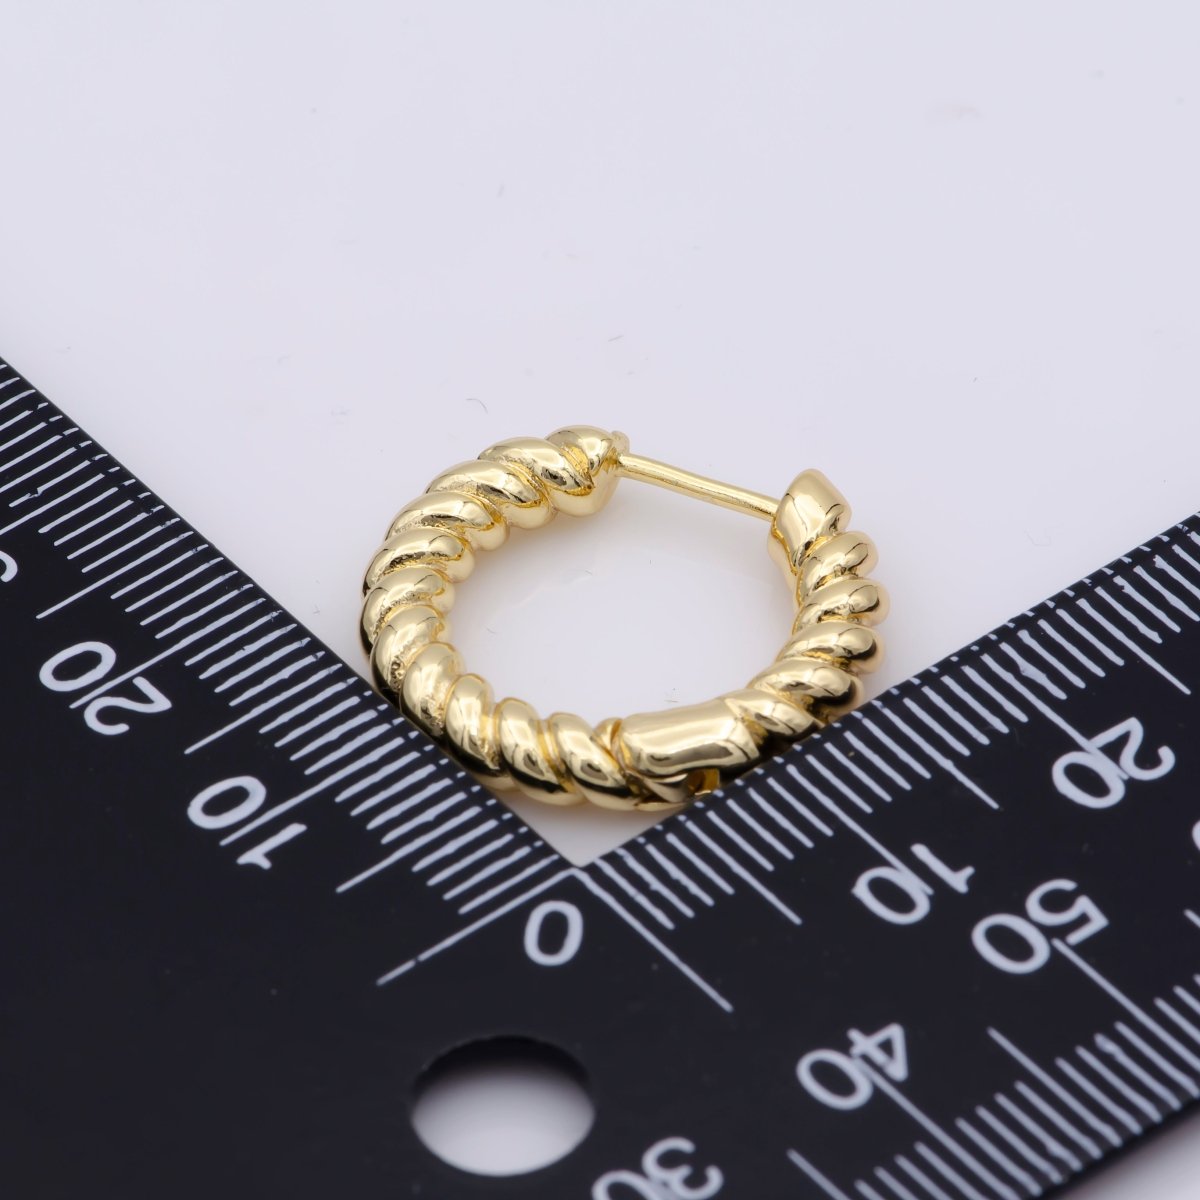 Croissant Earring - Chunky Twist Hoop Earring Gold - 14K Gold Fill Hoop - Oval Gold Hoop - Gold Fill Chunky Hoop - Twisted Earrings - Gift AE-802 - DLUXCA